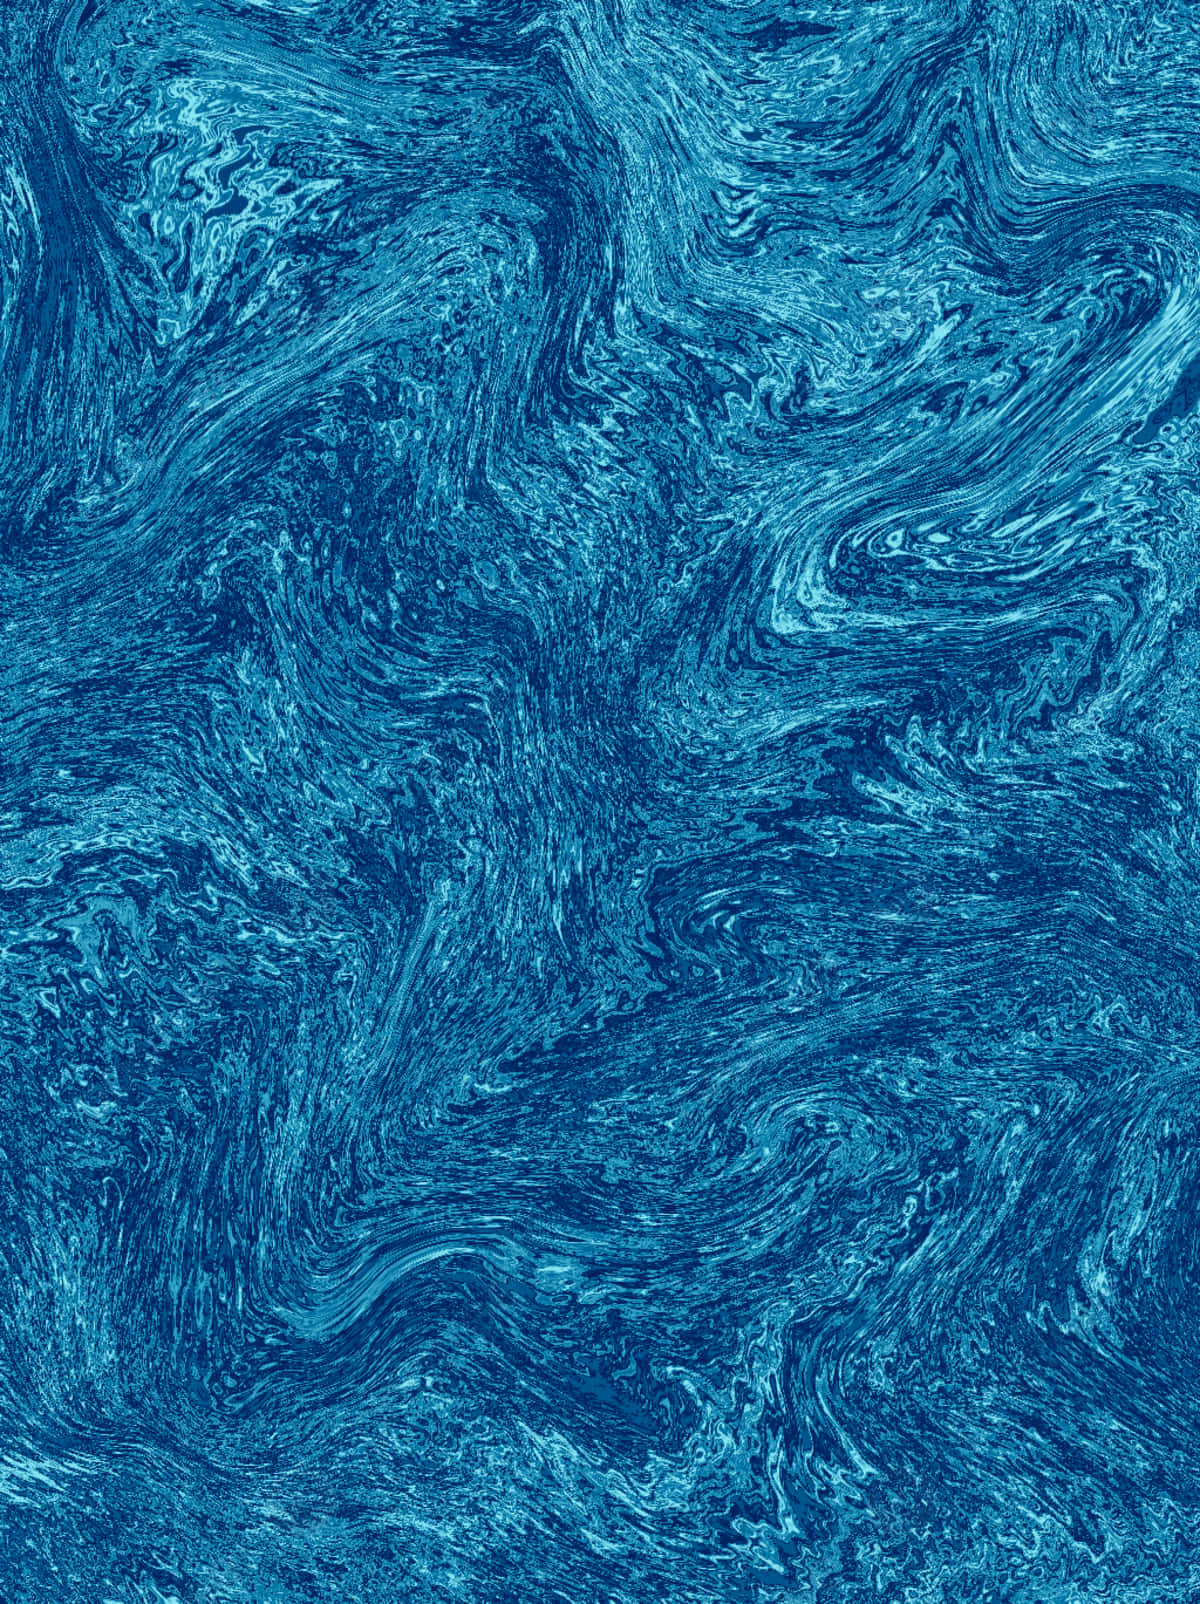 Blauewellen-textur Bilder